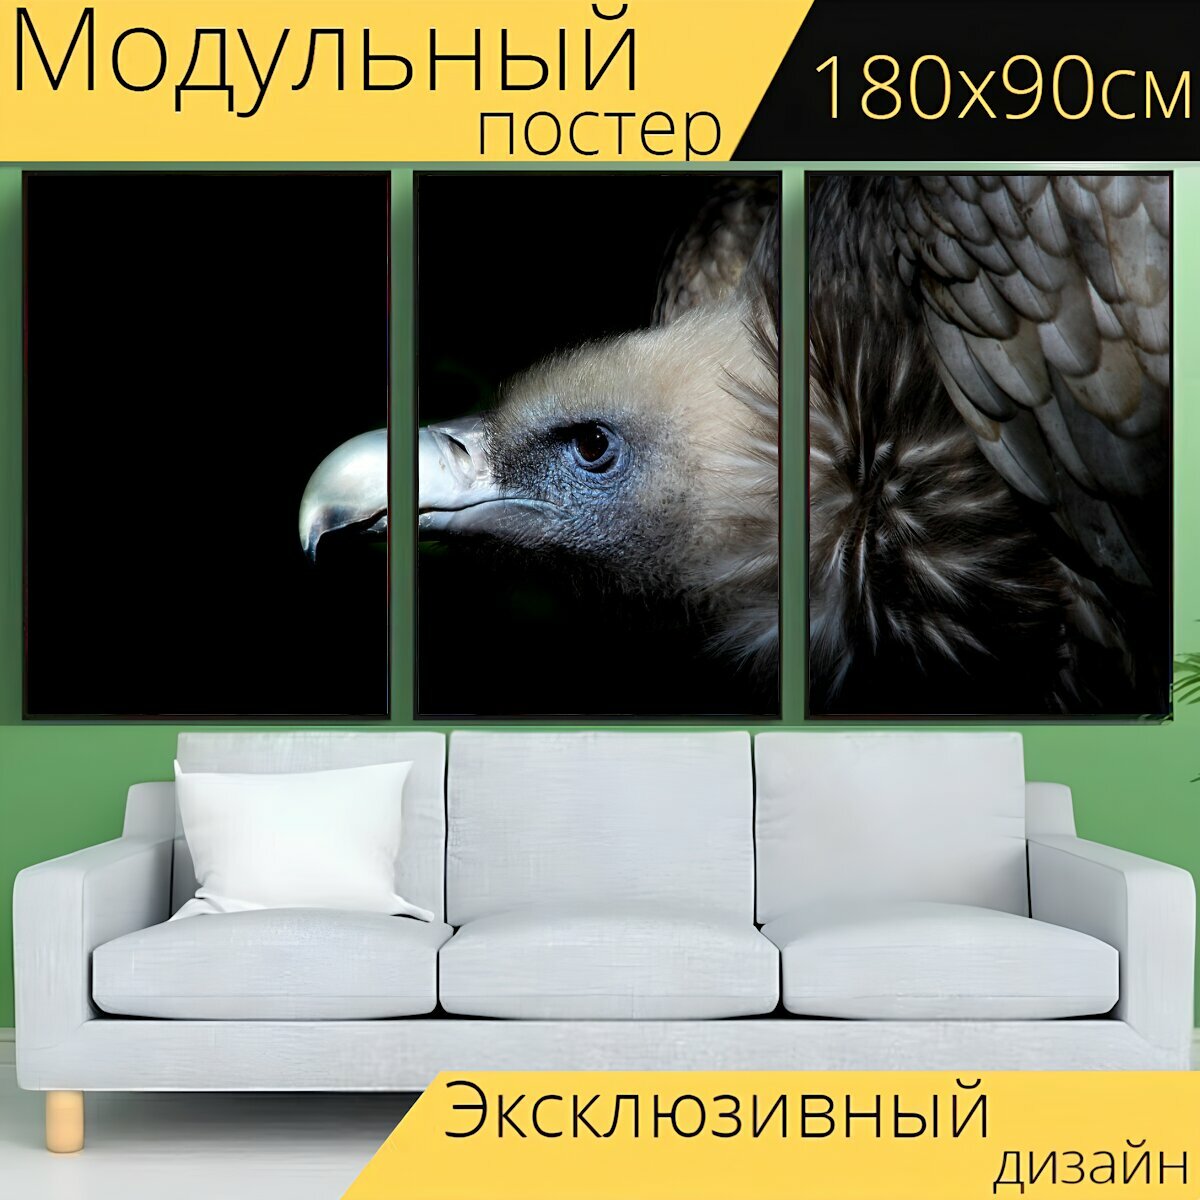 Модульный постер "Гриф, стервятник, птица" 180 x 90 см. для интерьера